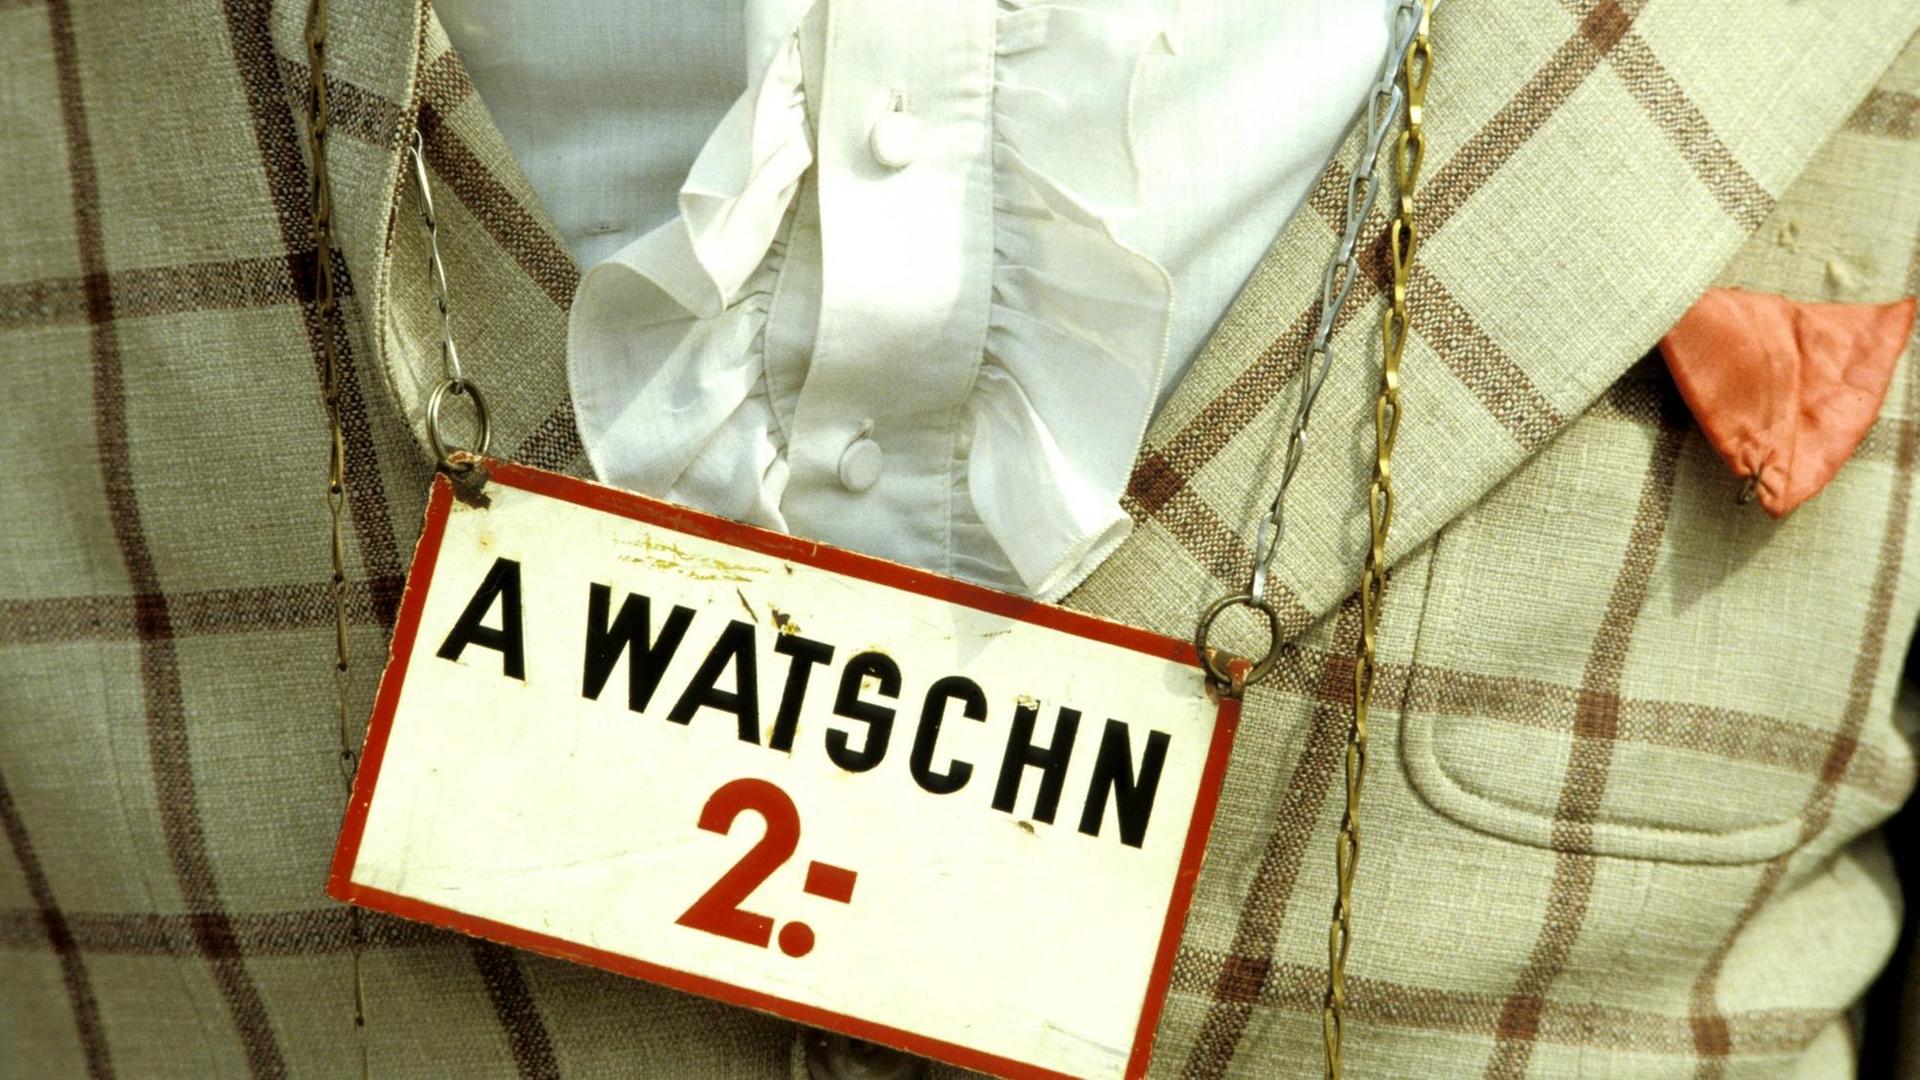 Ein Mann trägt ein Hemd mit Sakko, um den Hals hängt ihm ein Schild, auf dem steht: "A Watschn 2.-". Watschn ist ein österreichisches Wort für Ohrfeige.